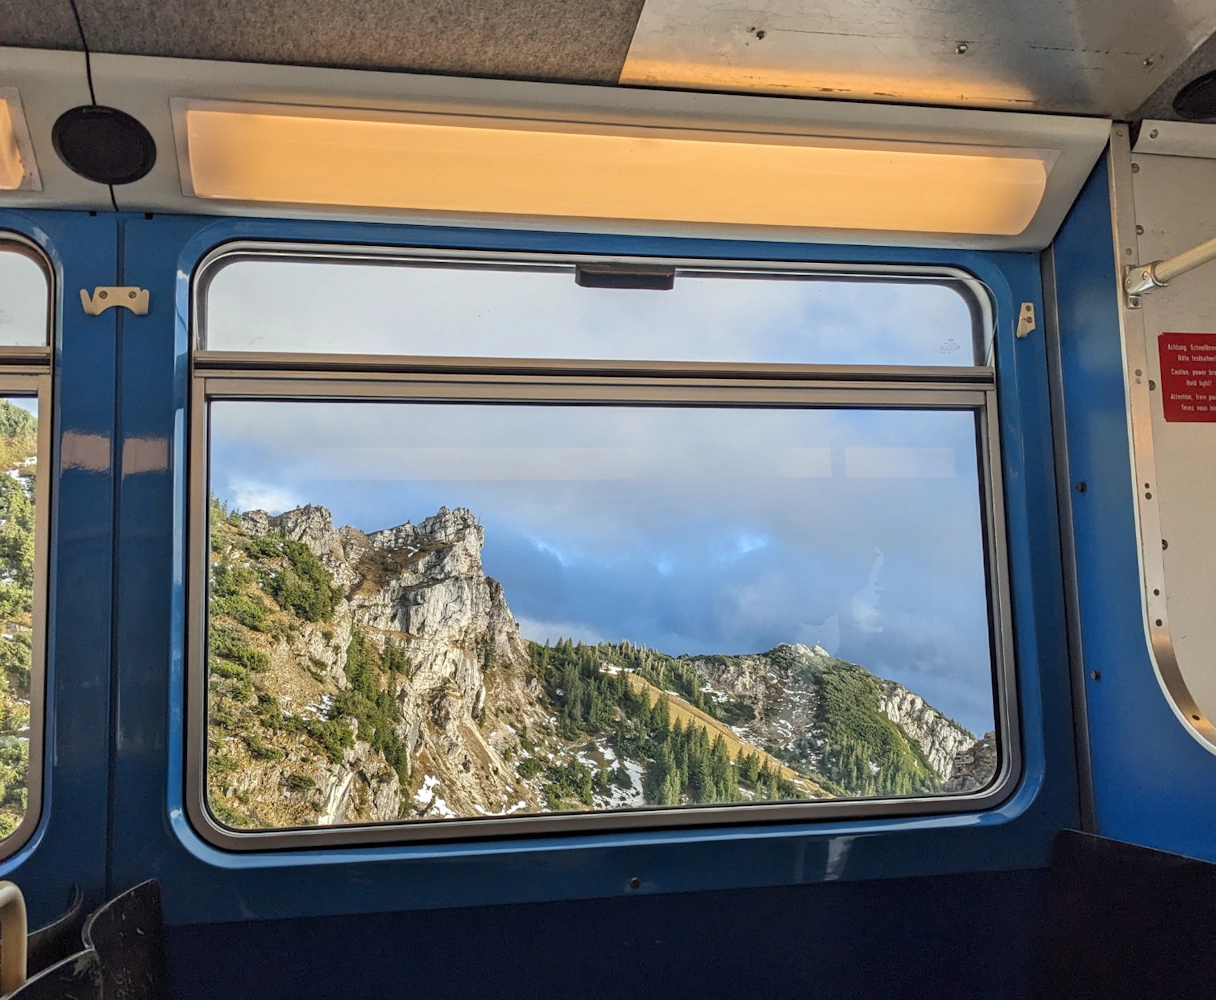 Aussicht aus der Zahnradbahn am Wendelstein. Berge und Landschaft